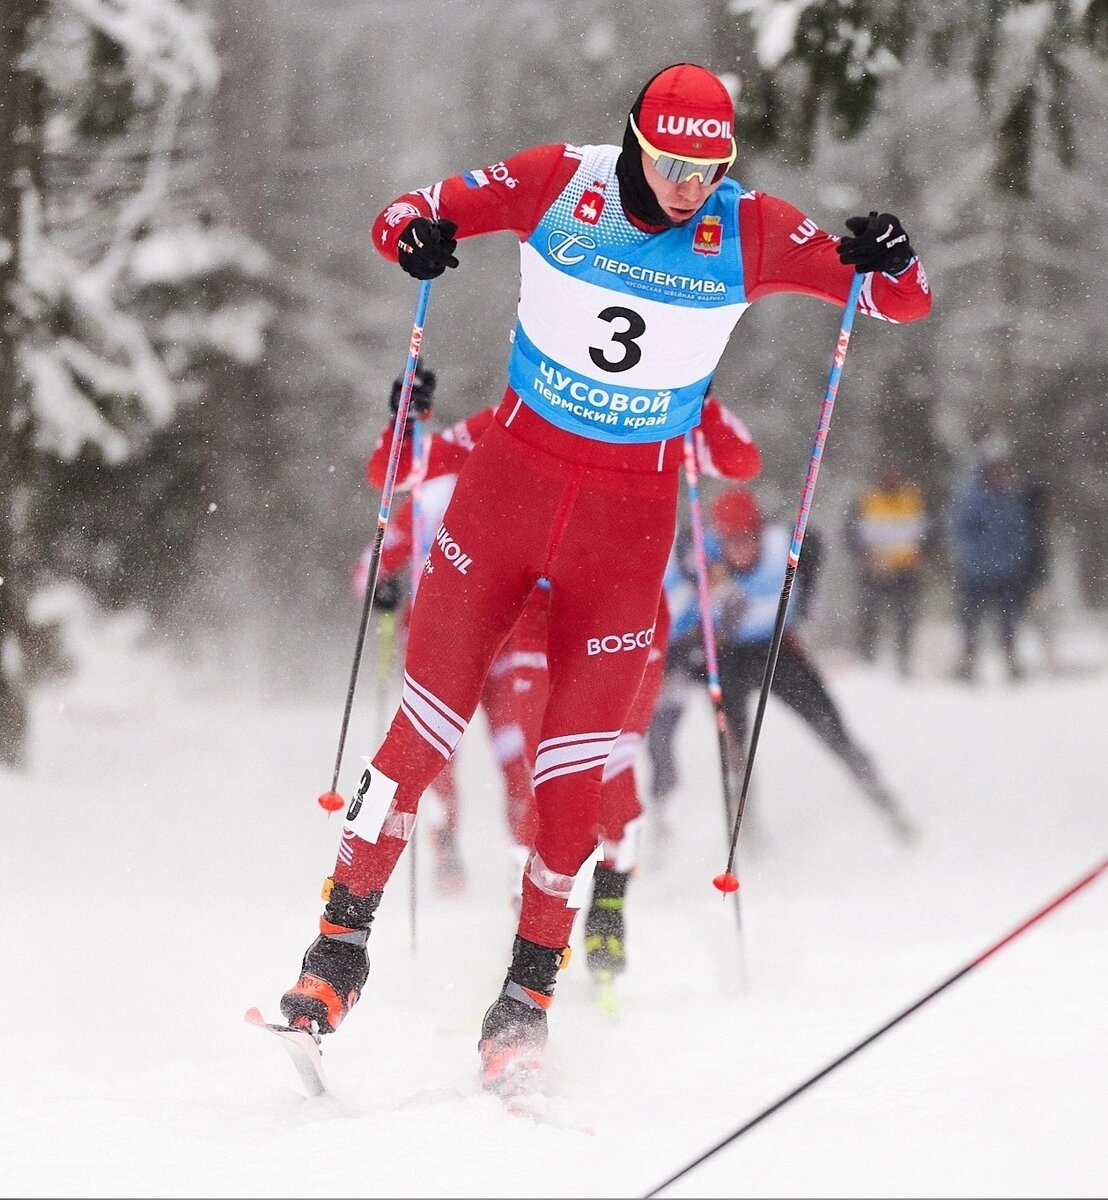 Лыжные гонки Вяльбе Гаврилюк. Кузбасс ски лыжный марафон. Прямая трансляция лыжной гонки на матч ТВ.